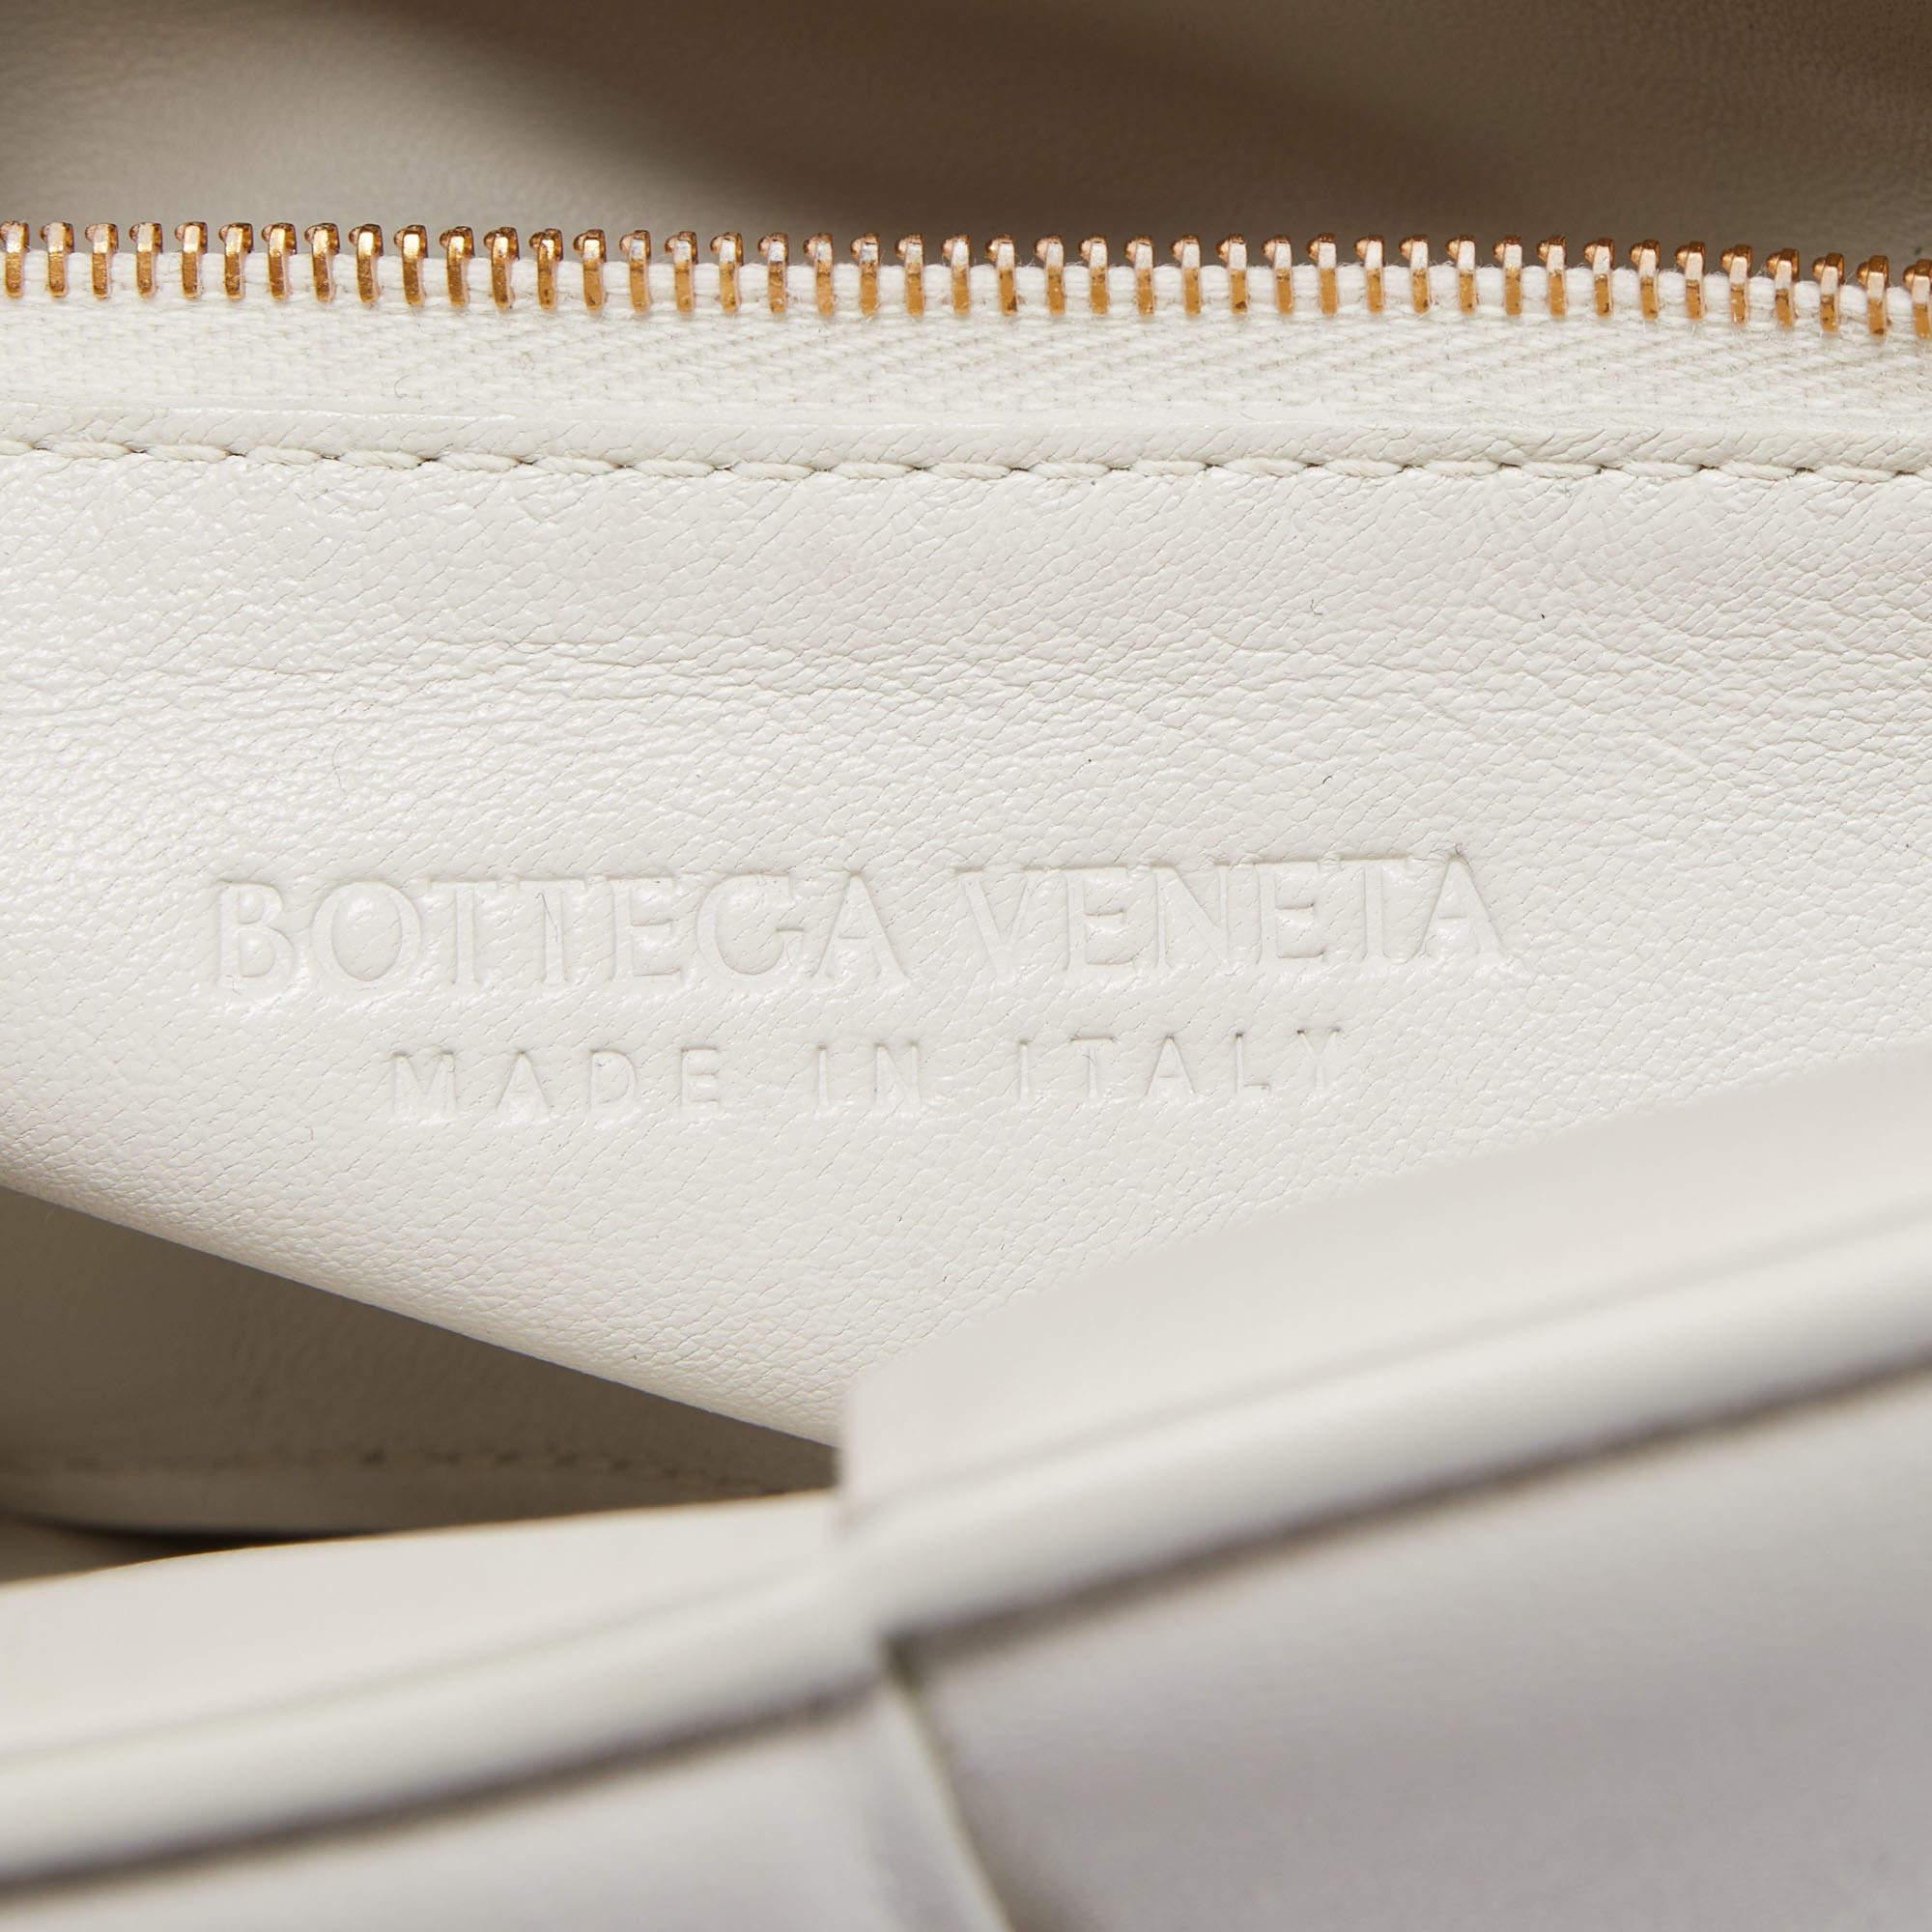 Bottega Veneta White Padded Leather Chain Cassette Shoulder Bag For Sale 2